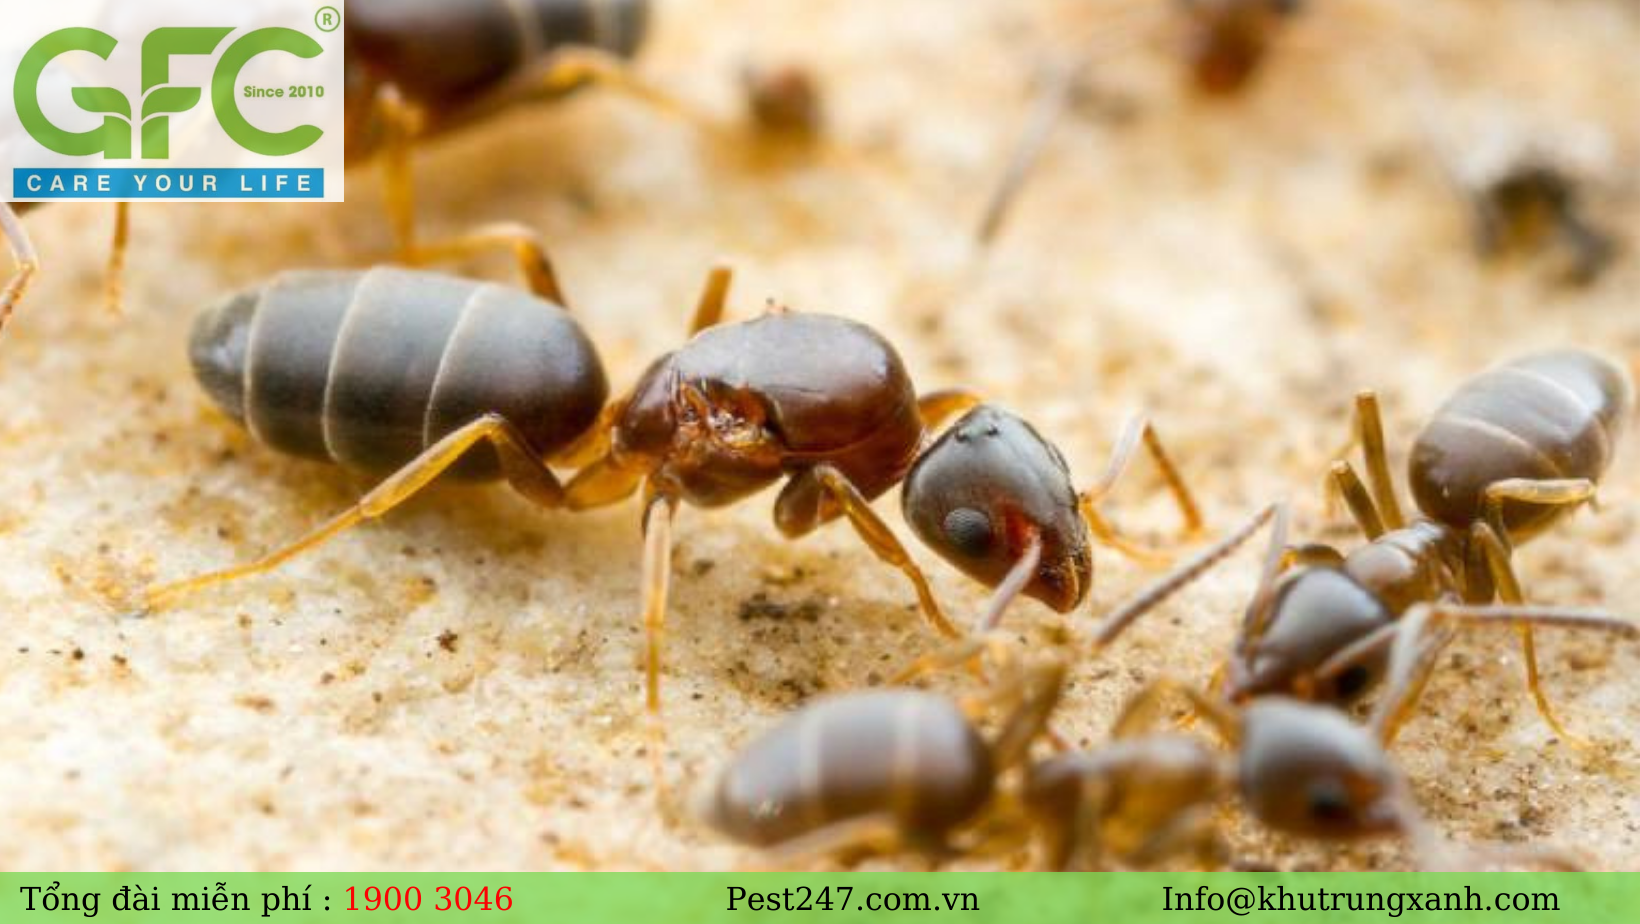 Loài kiến này thường gây hại ở điểm những con kiến sẽ tấn công liên tục vào thức ăn và thực phẩm